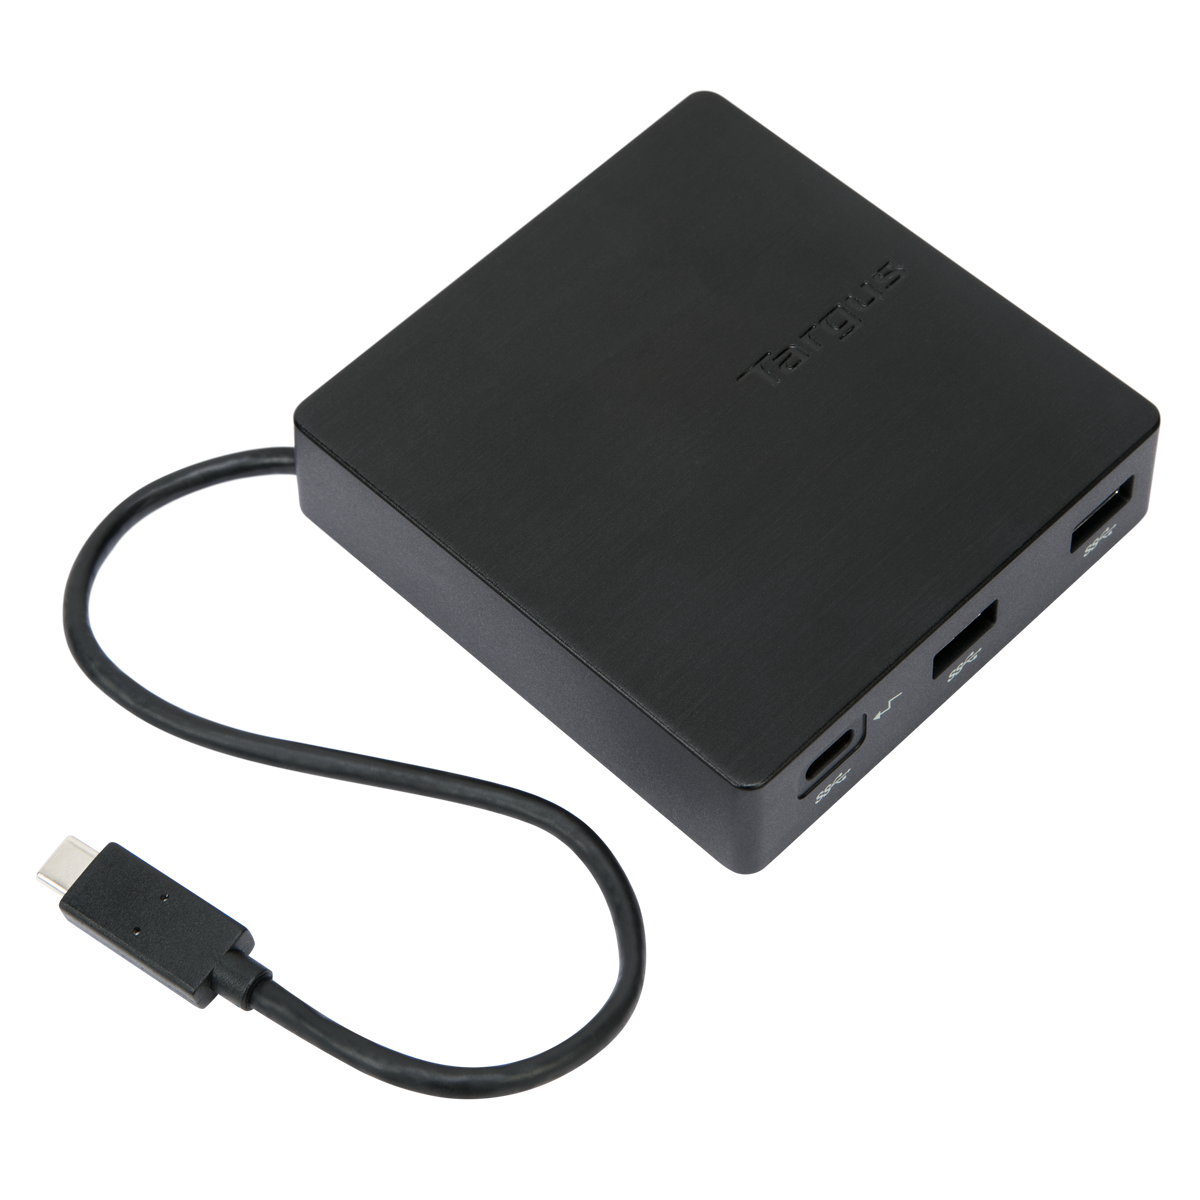 桜の花びら(厚みあり) 送料無料 Targus USB-C 4K HDMIドッキングステーション カードリーダー 100W PDパススルー充電対応  シルバー DOCK414 1個